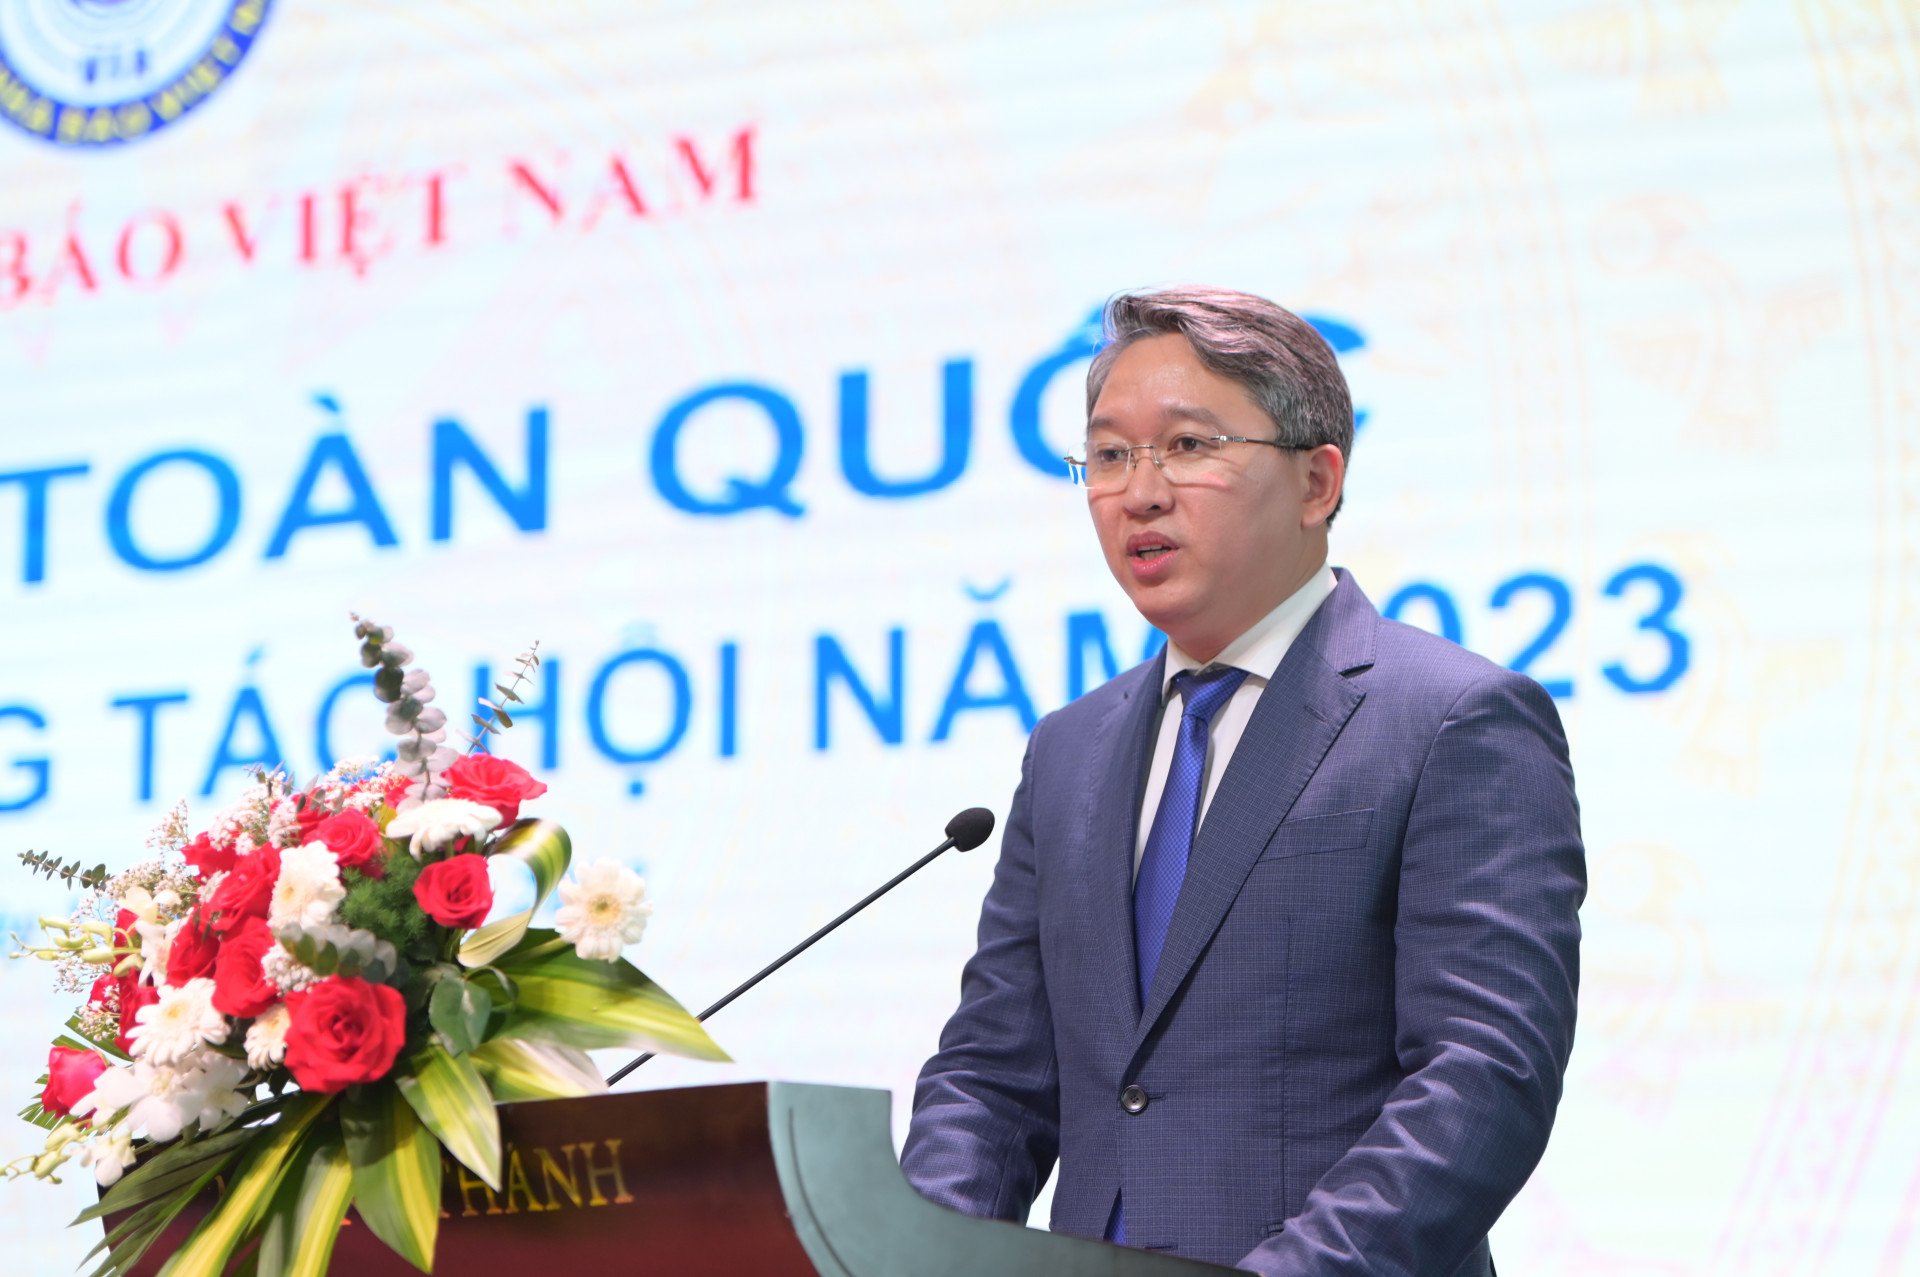 Đồng chí Nguyễn Hải Ninh phát biểu chào mừng hội nghị